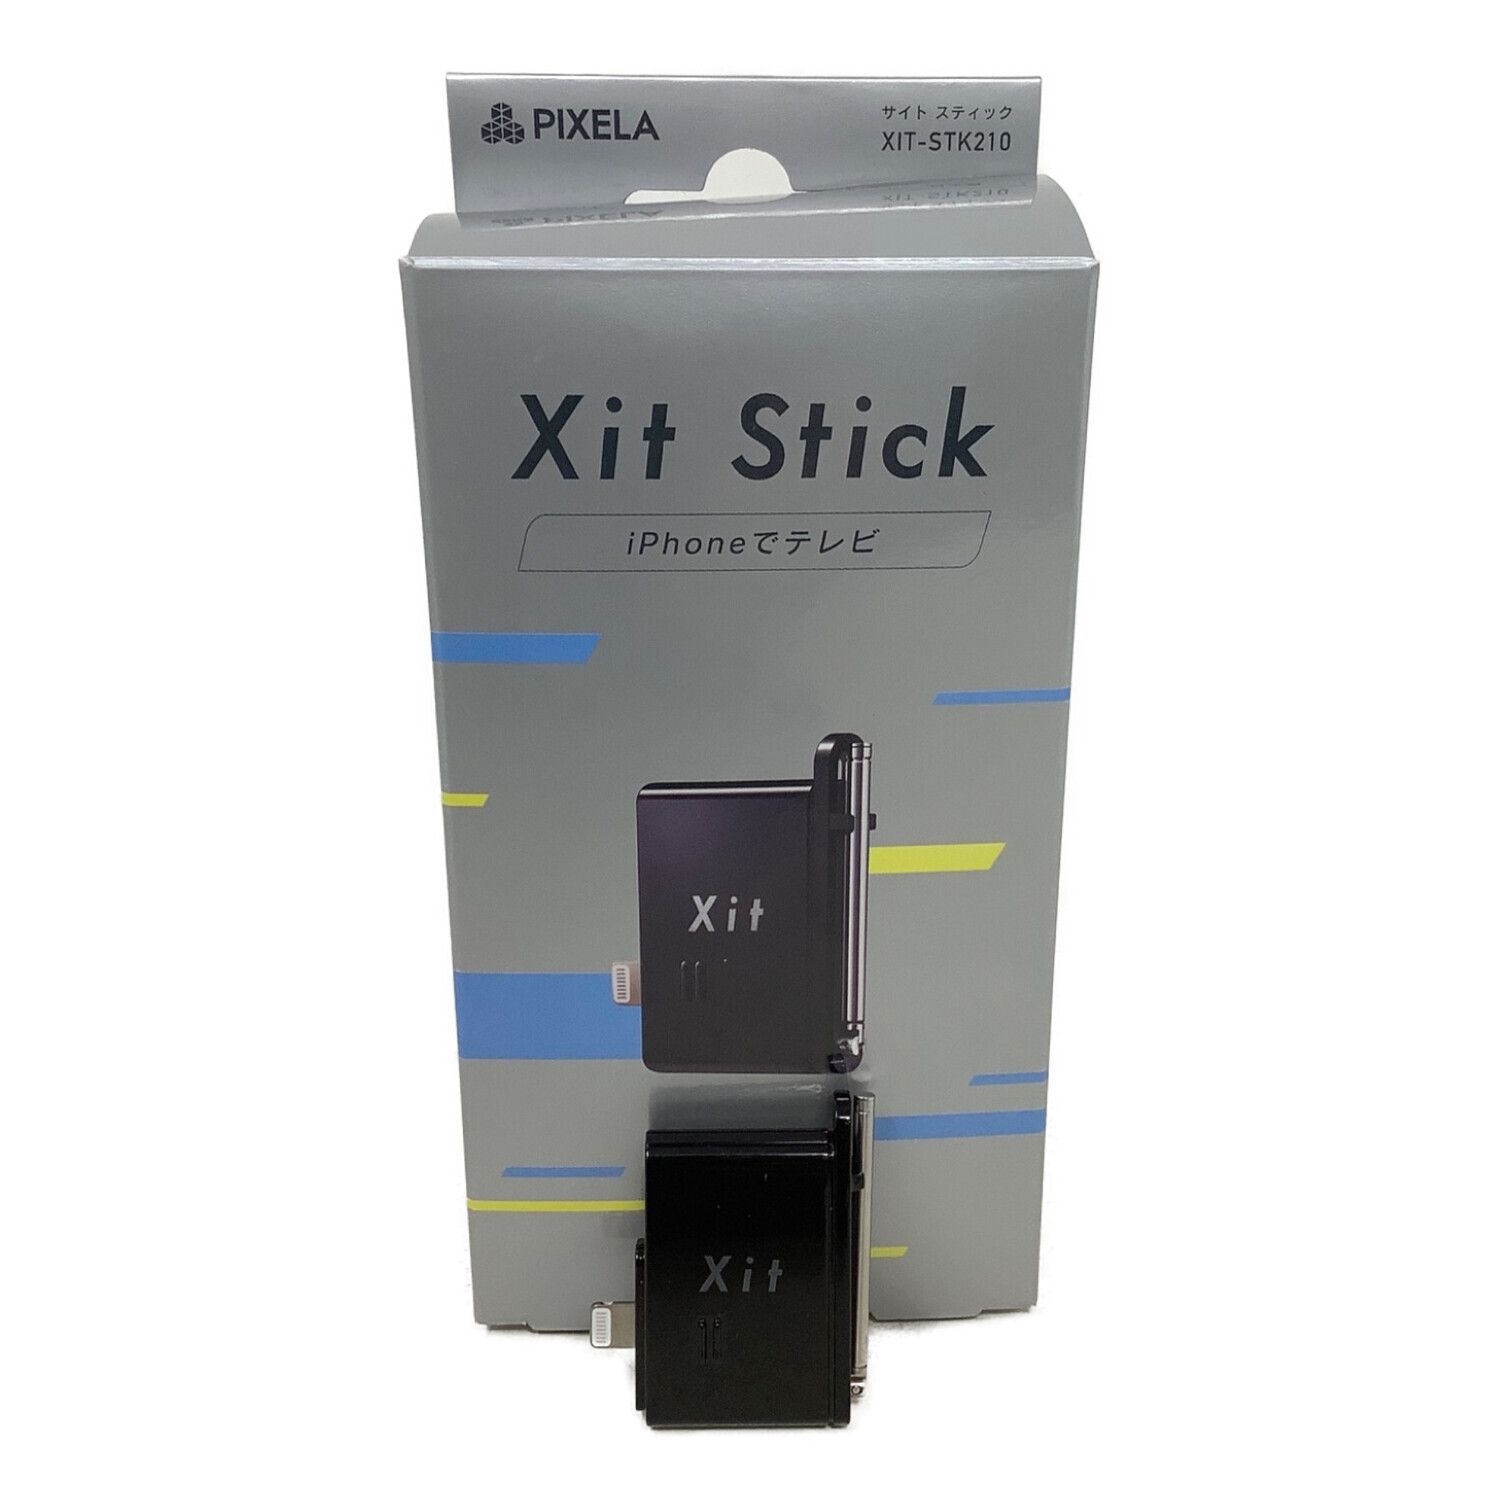 PIXELA Xit Stick  XIT-STK210